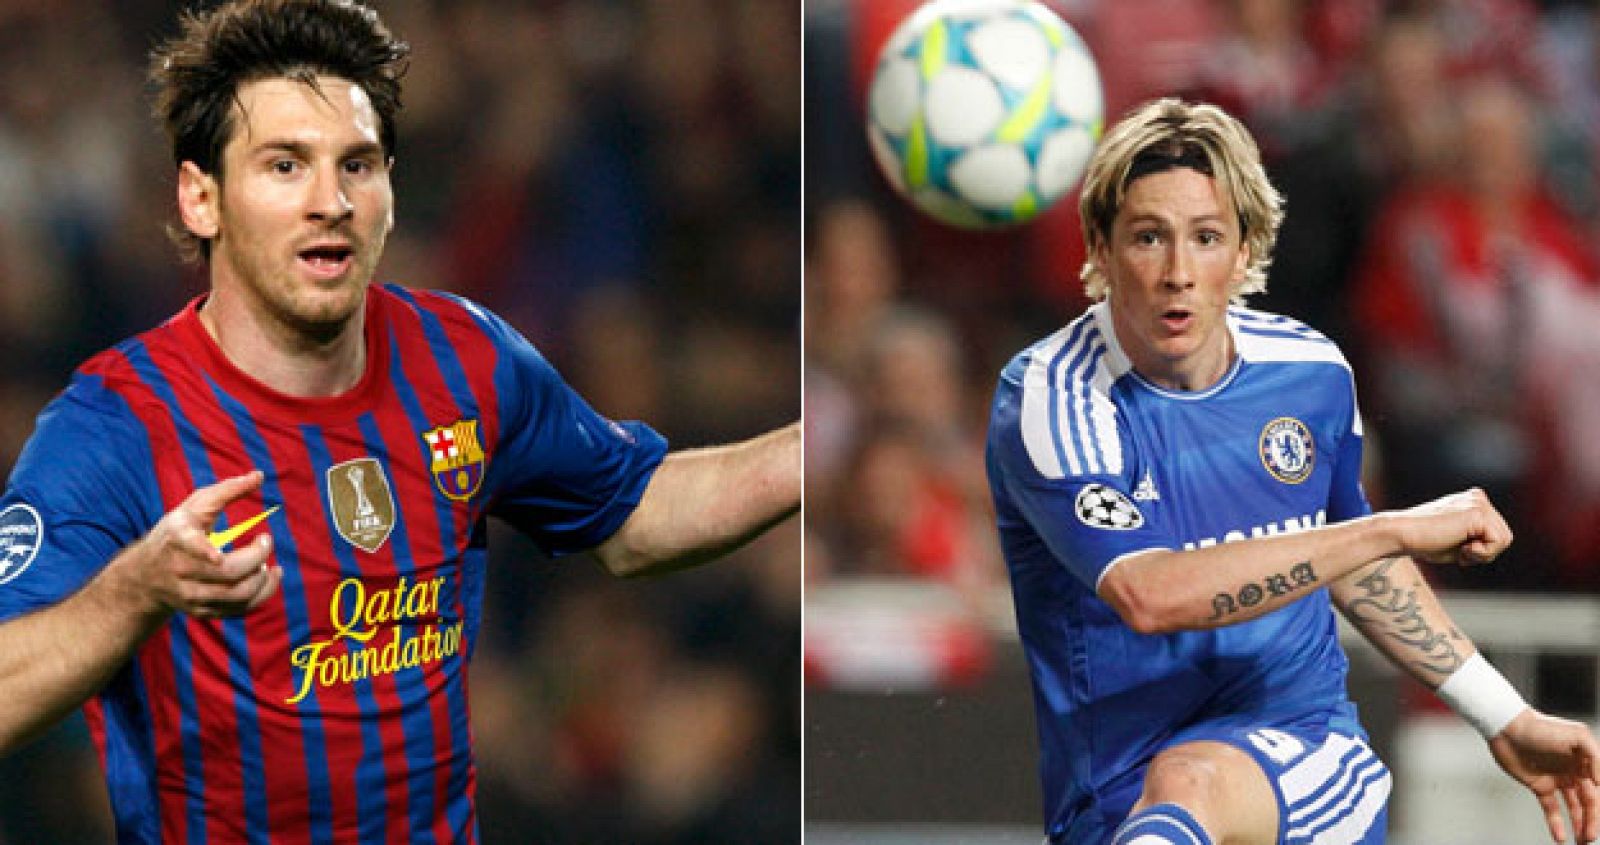 El jugador del Barcelona, Lionel Messi (izq) y el jugador del Chelsea, Fernando Torres (drcha)